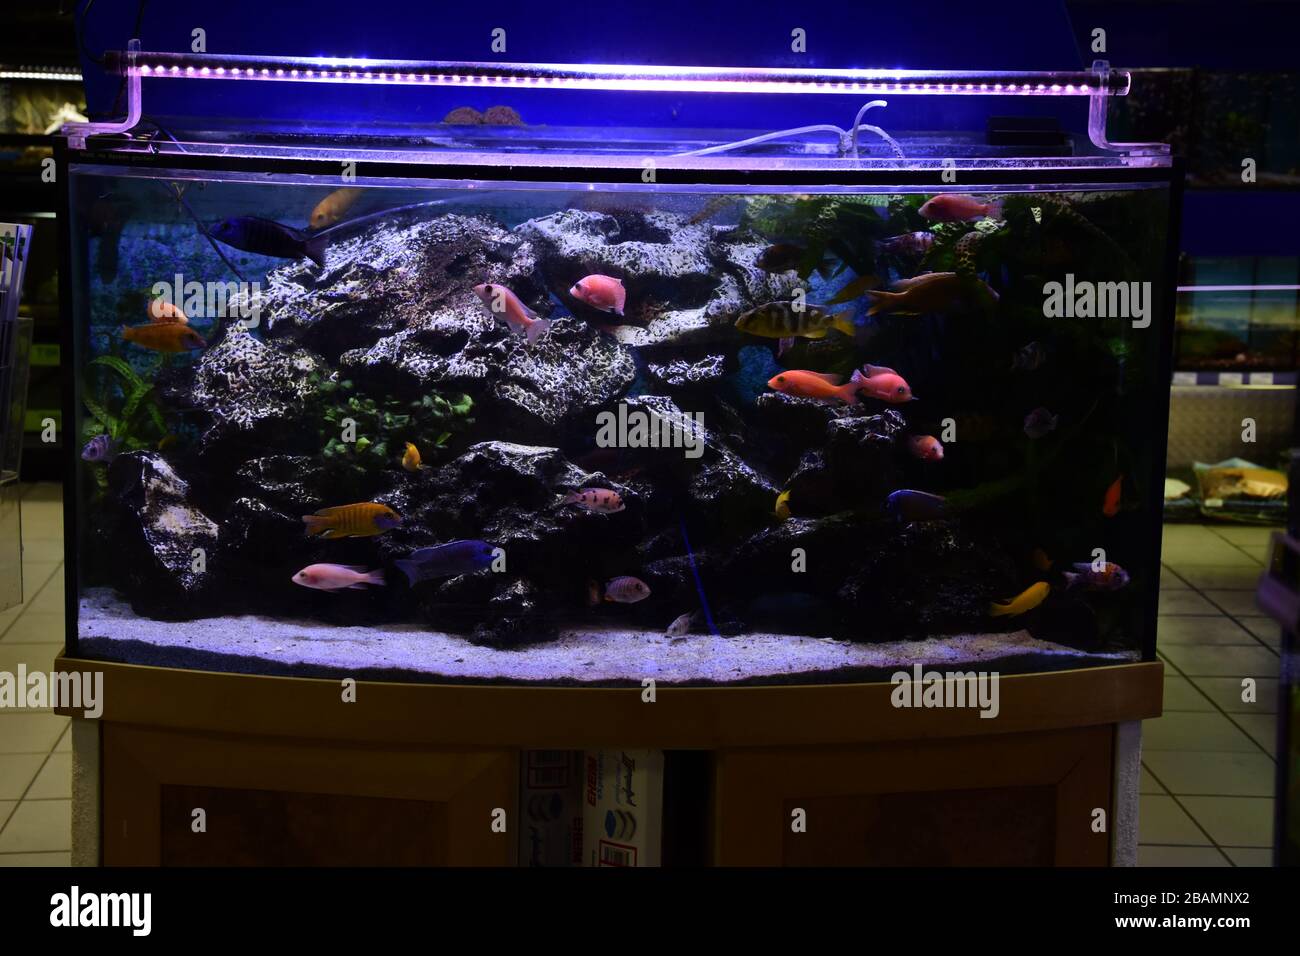 Poissons d'aquarium d'eau douce, poissons de cichlid endémiques provenant de lacs africains et de rivières sud-américaines Banque D'Images